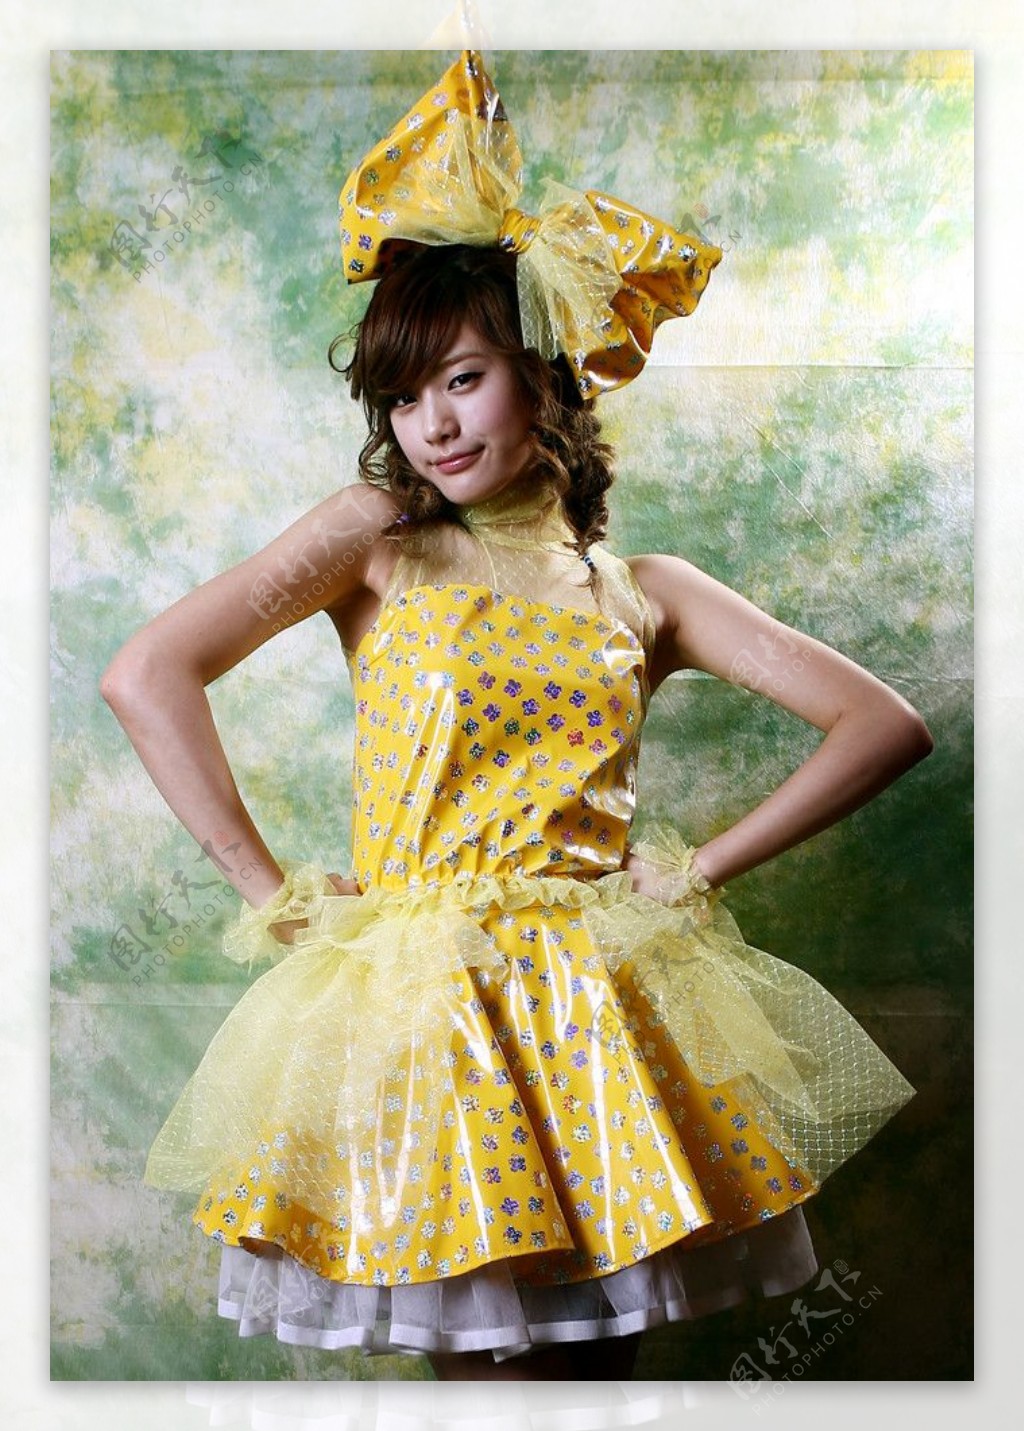 黄裙少女图片